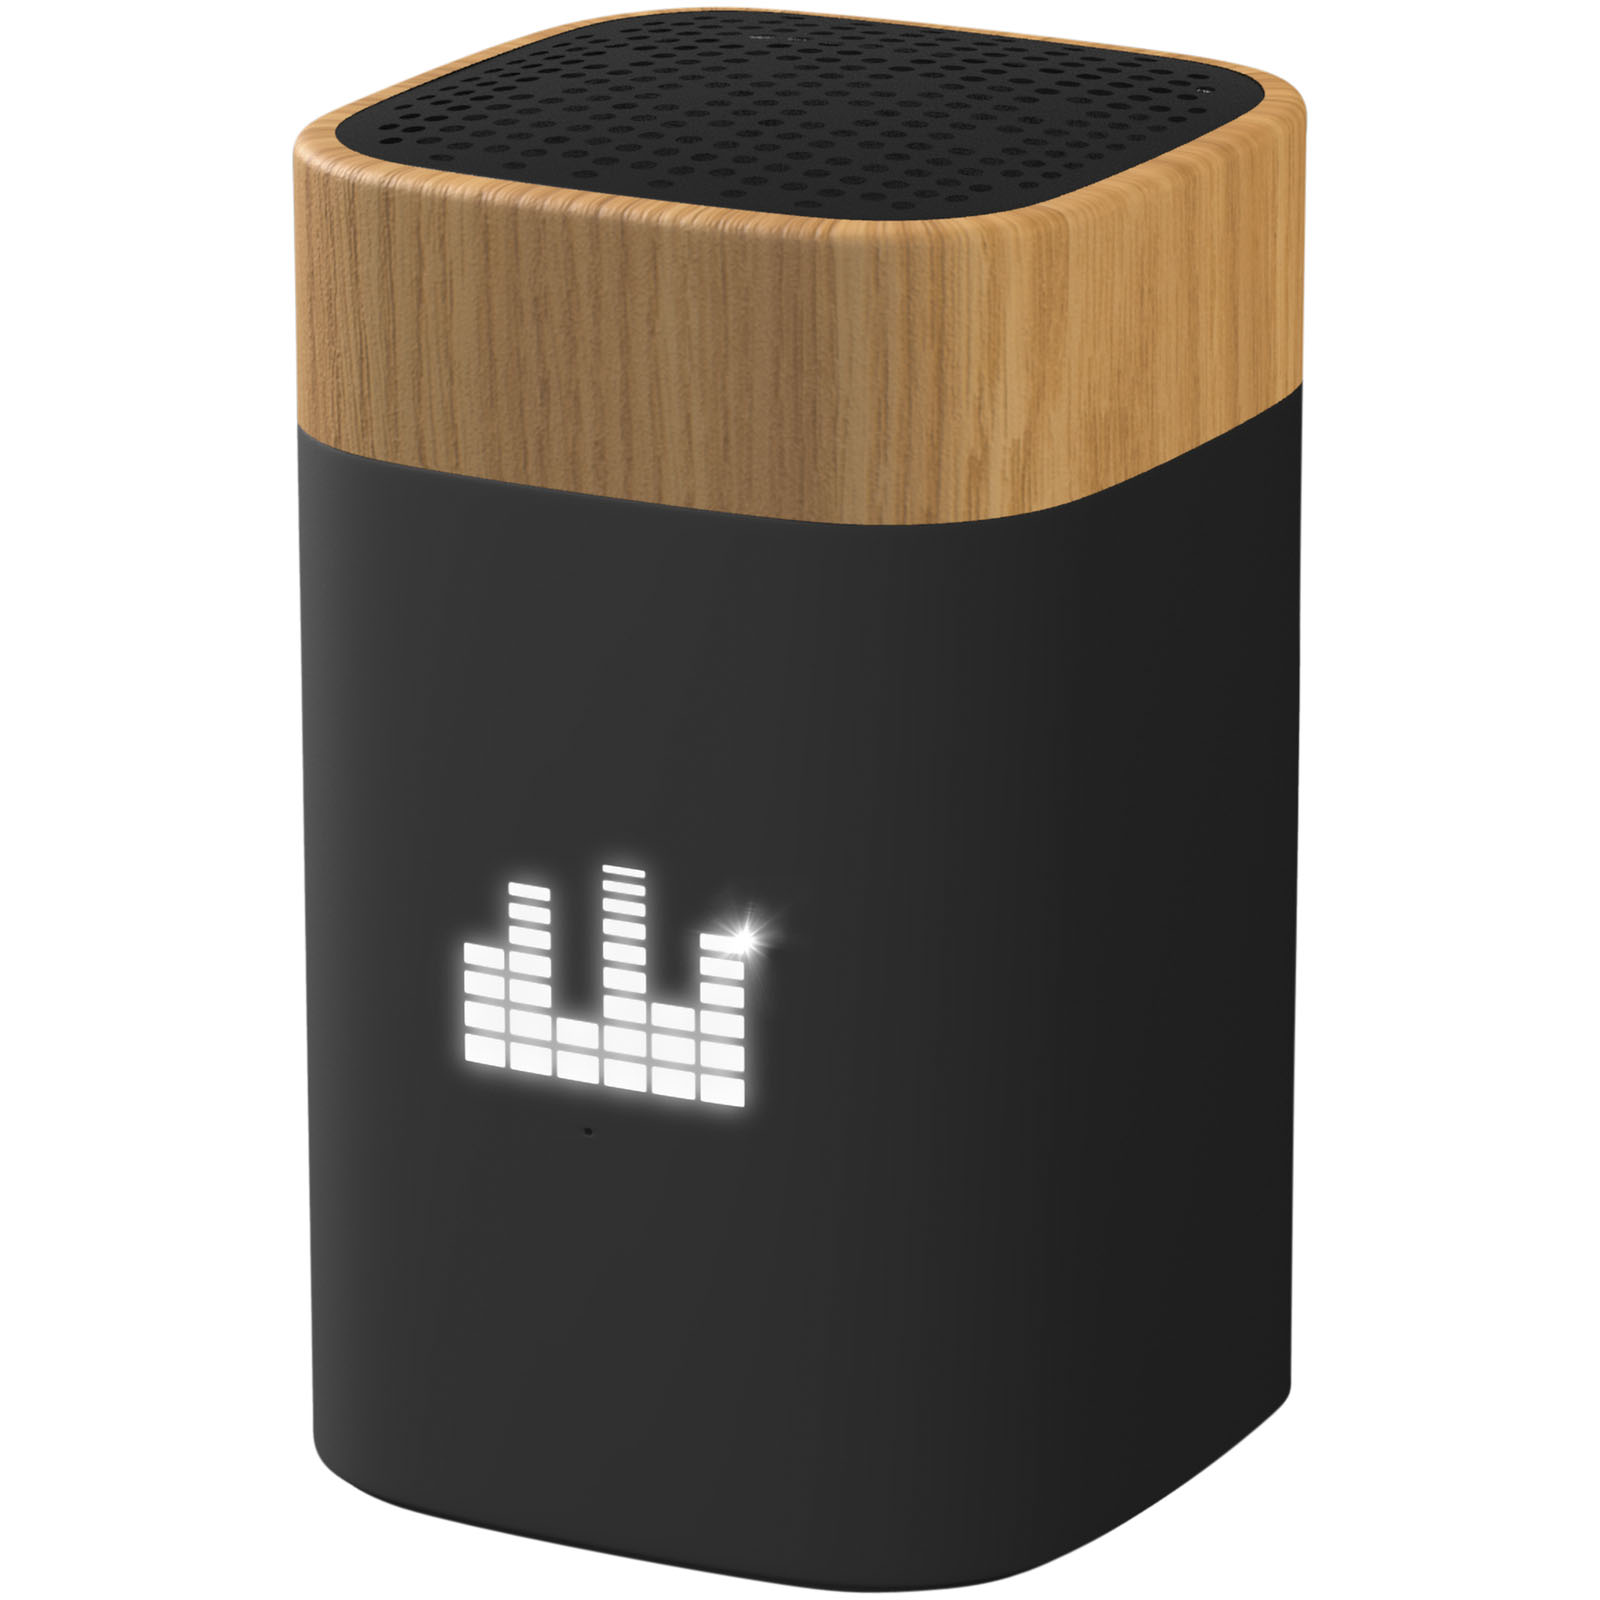 Altoparlante in legno di acero Bluetooth wireless da 5W - Porlezza